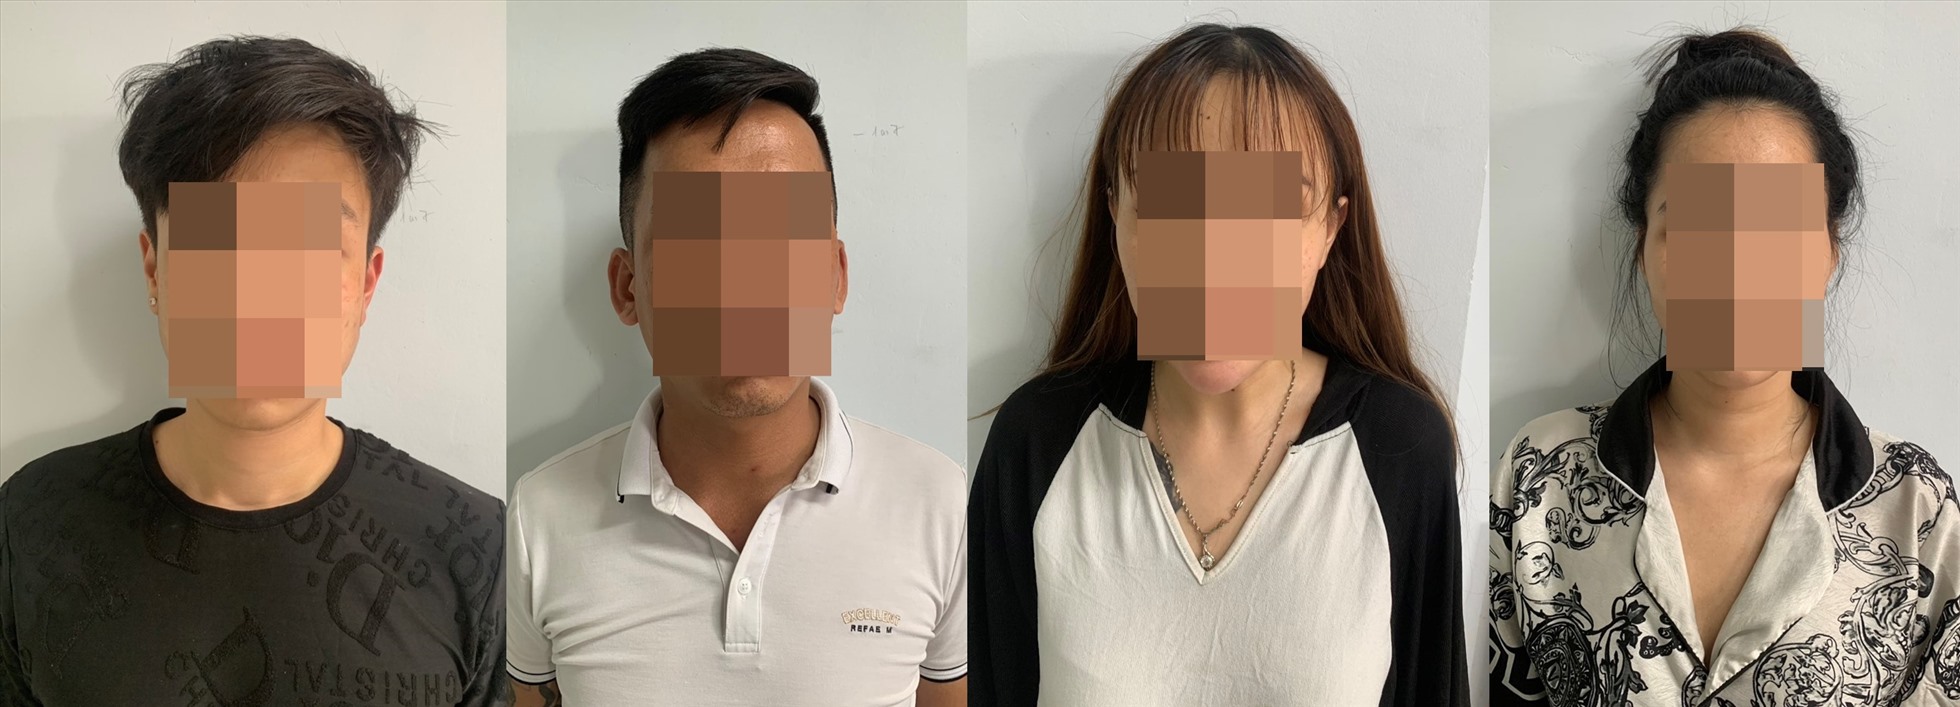 4 đối tượng Nguyễn Ngọc Sơn, Lê Việt Huy, Bùi Mai Uyển Nhi và Đặng Thị Anh Tú bị phát hiện tổ chức sử dụng ma túy vào ngày 16.3. Ảnh: Công an cung cấp